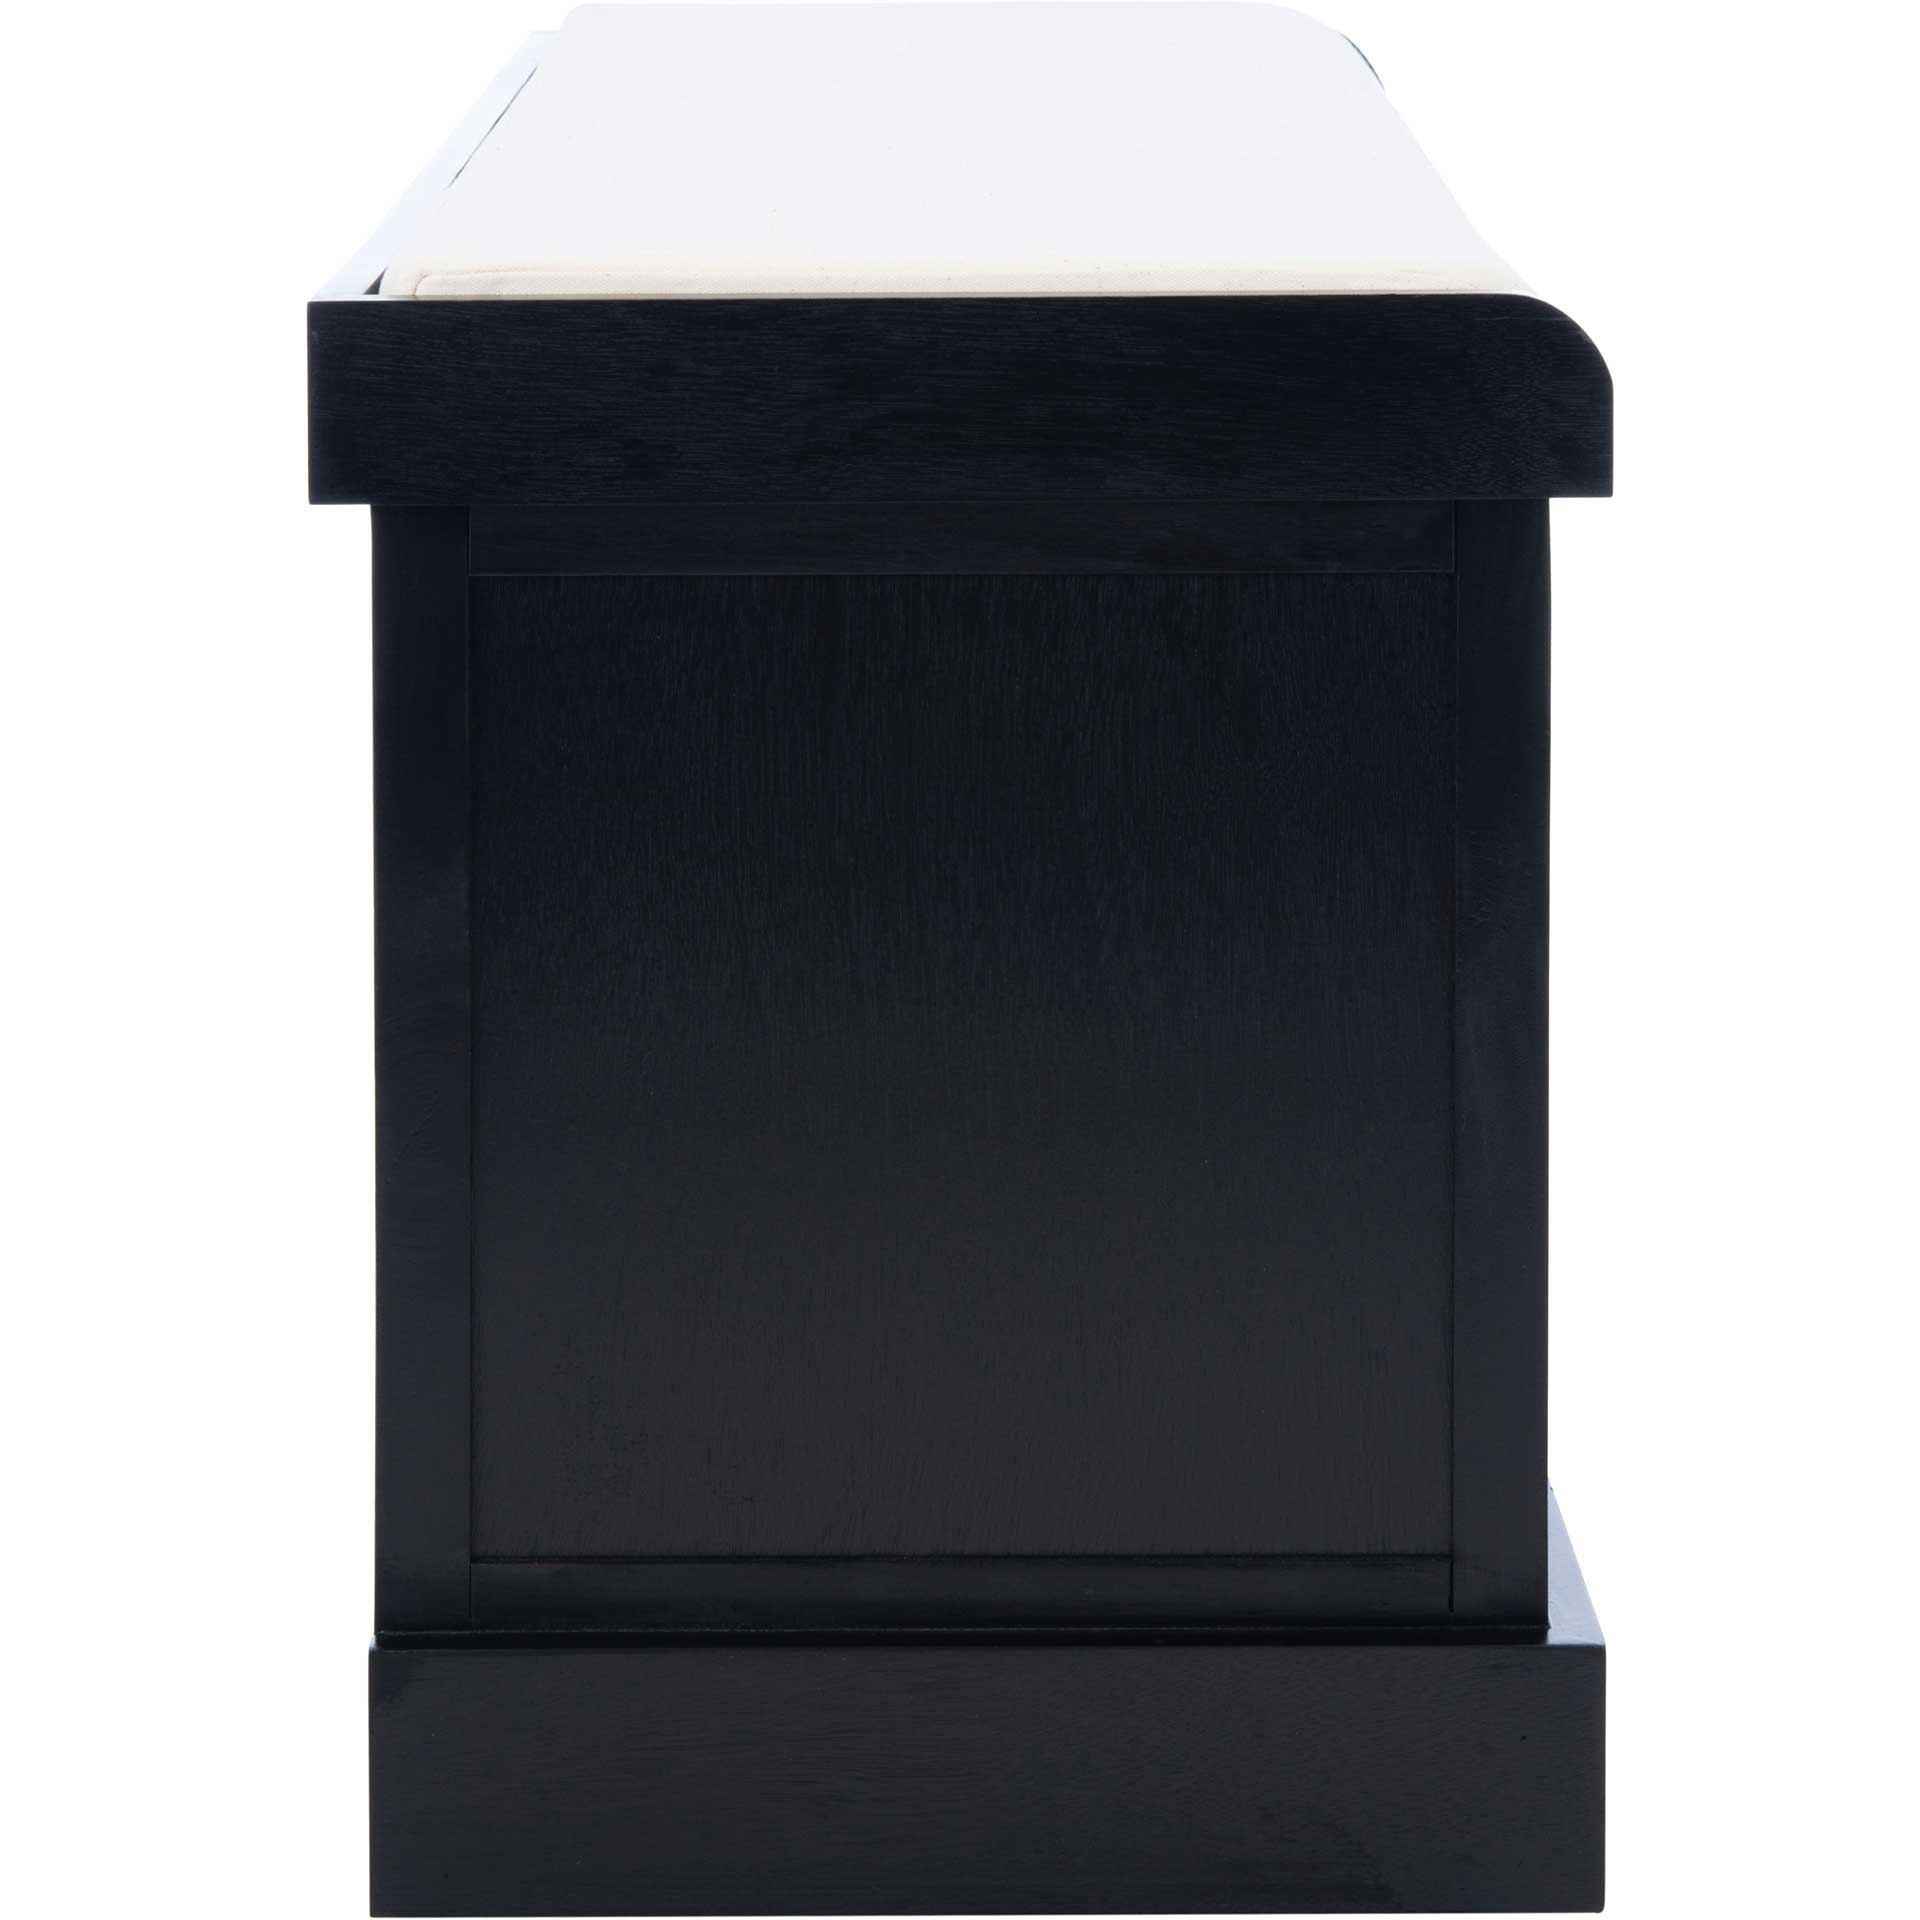 Lali 3 Drawer/Cushion Storage Bench Black